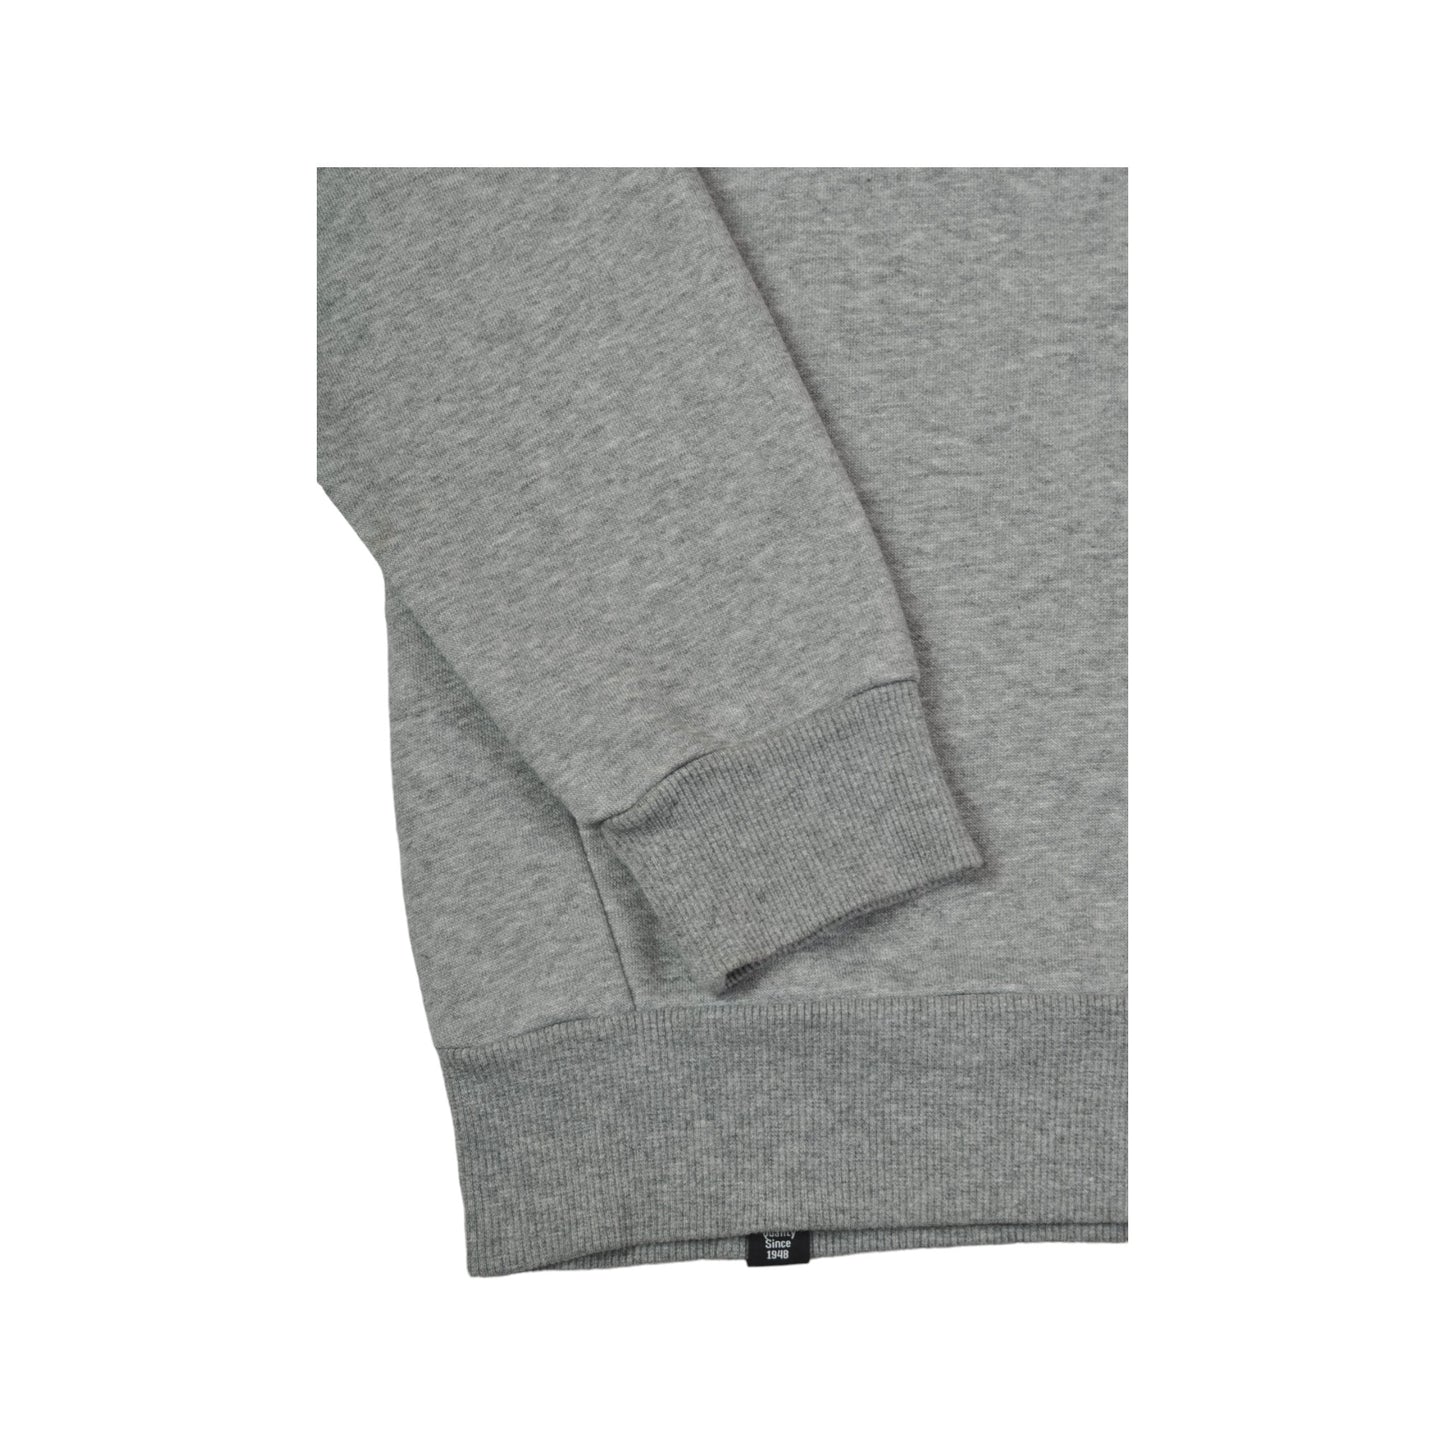 Vintage Puma Crewneck Sweatshirt Grey XS